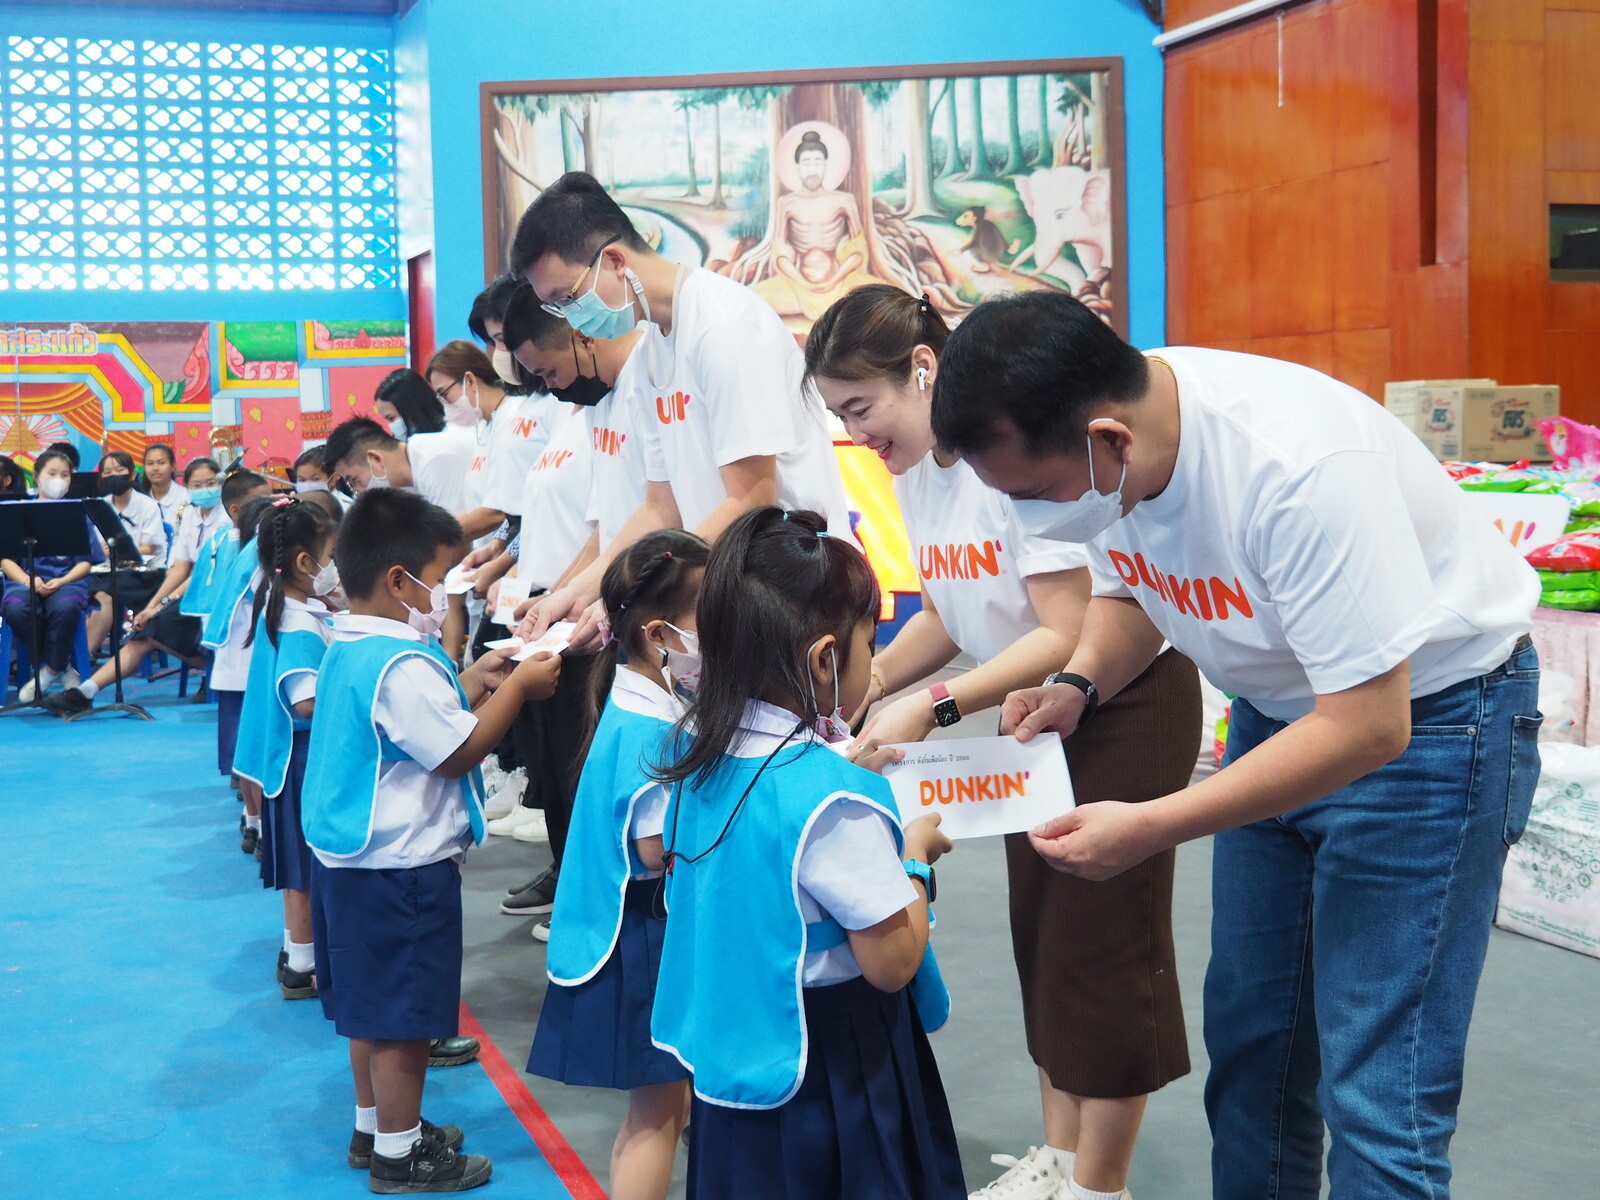 Dunkin' ชวนลูกค้าร่วมทำดีสร้างโอกาสเด็กไทย จัดโครงการ "ดังกิ้นเพื่อน้อง ปี 2566" มอบทุนการศึกษา 1,000,000 บาท "โรงเรียนวัดสระแก้ว - โรงเรียนบ้านเข็กน้อย"